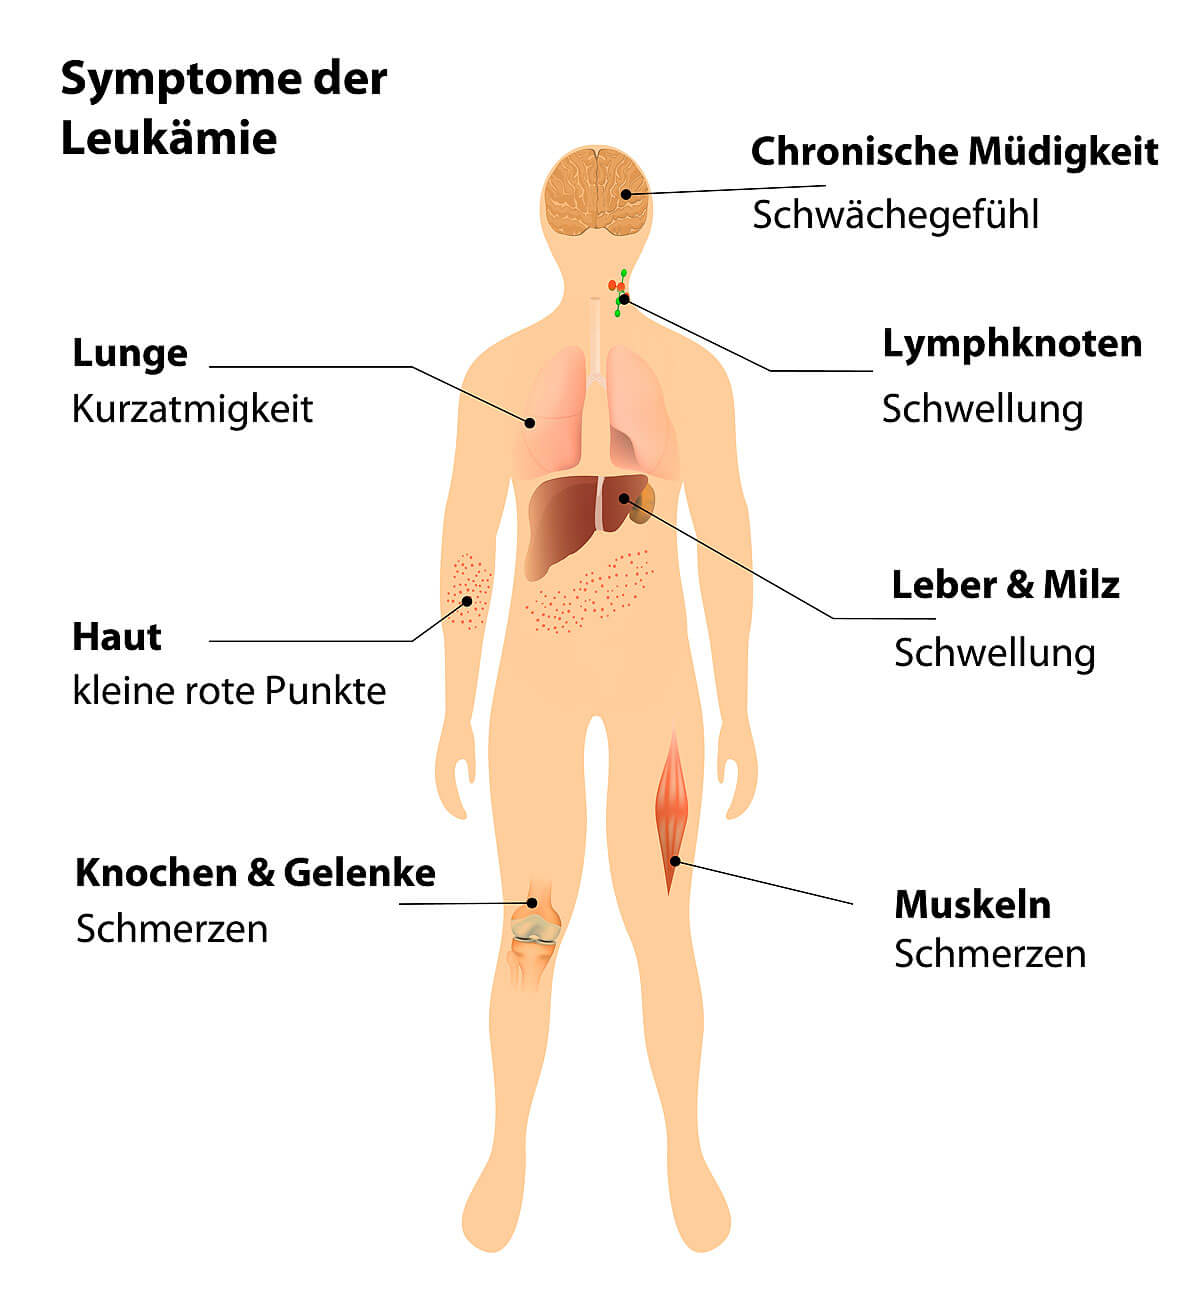 Die wichtigsten Symptome der Leukämie